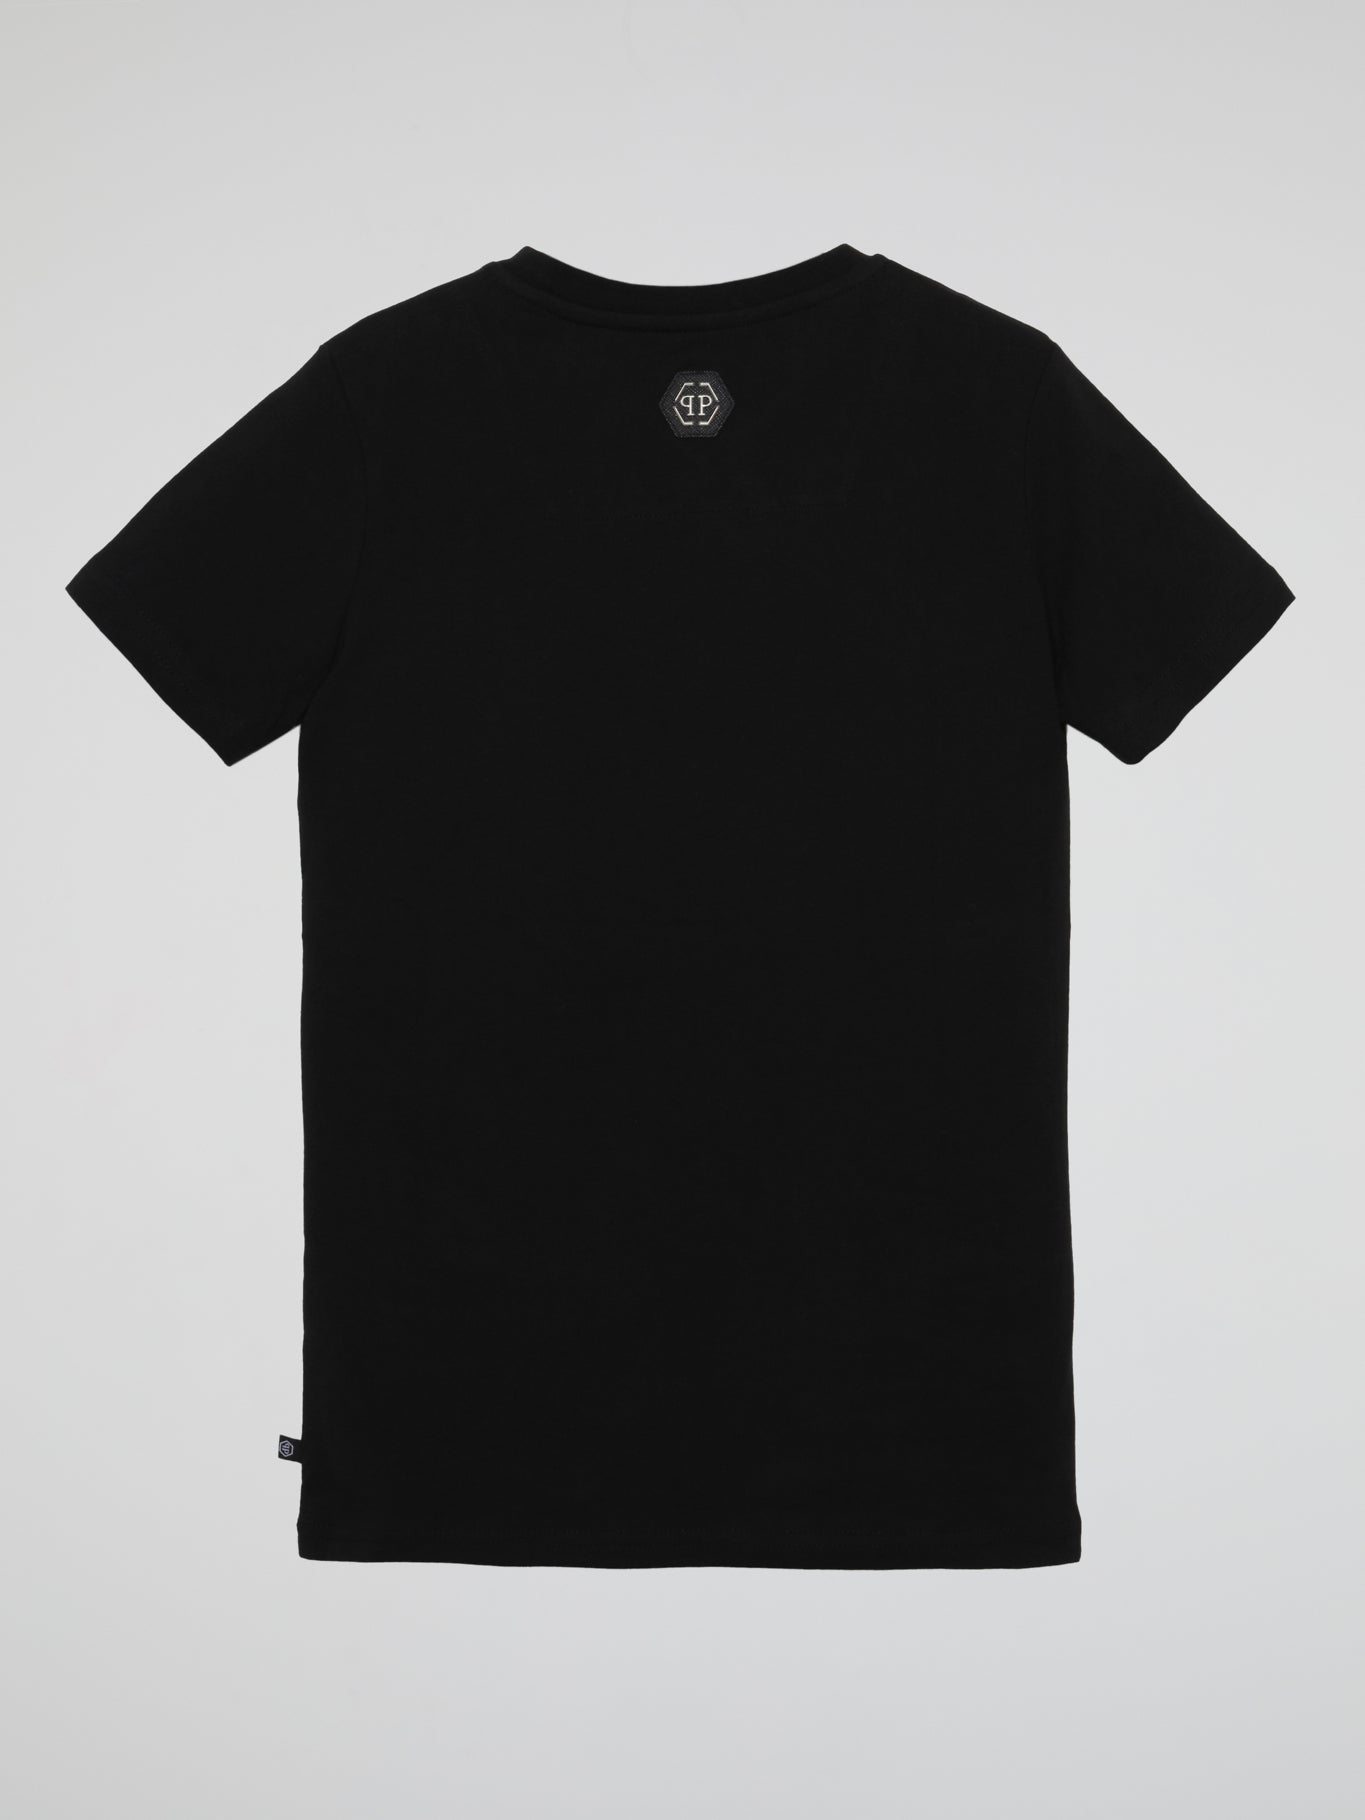 Black Embroidered Plein Logo T-Shirt (Kids)